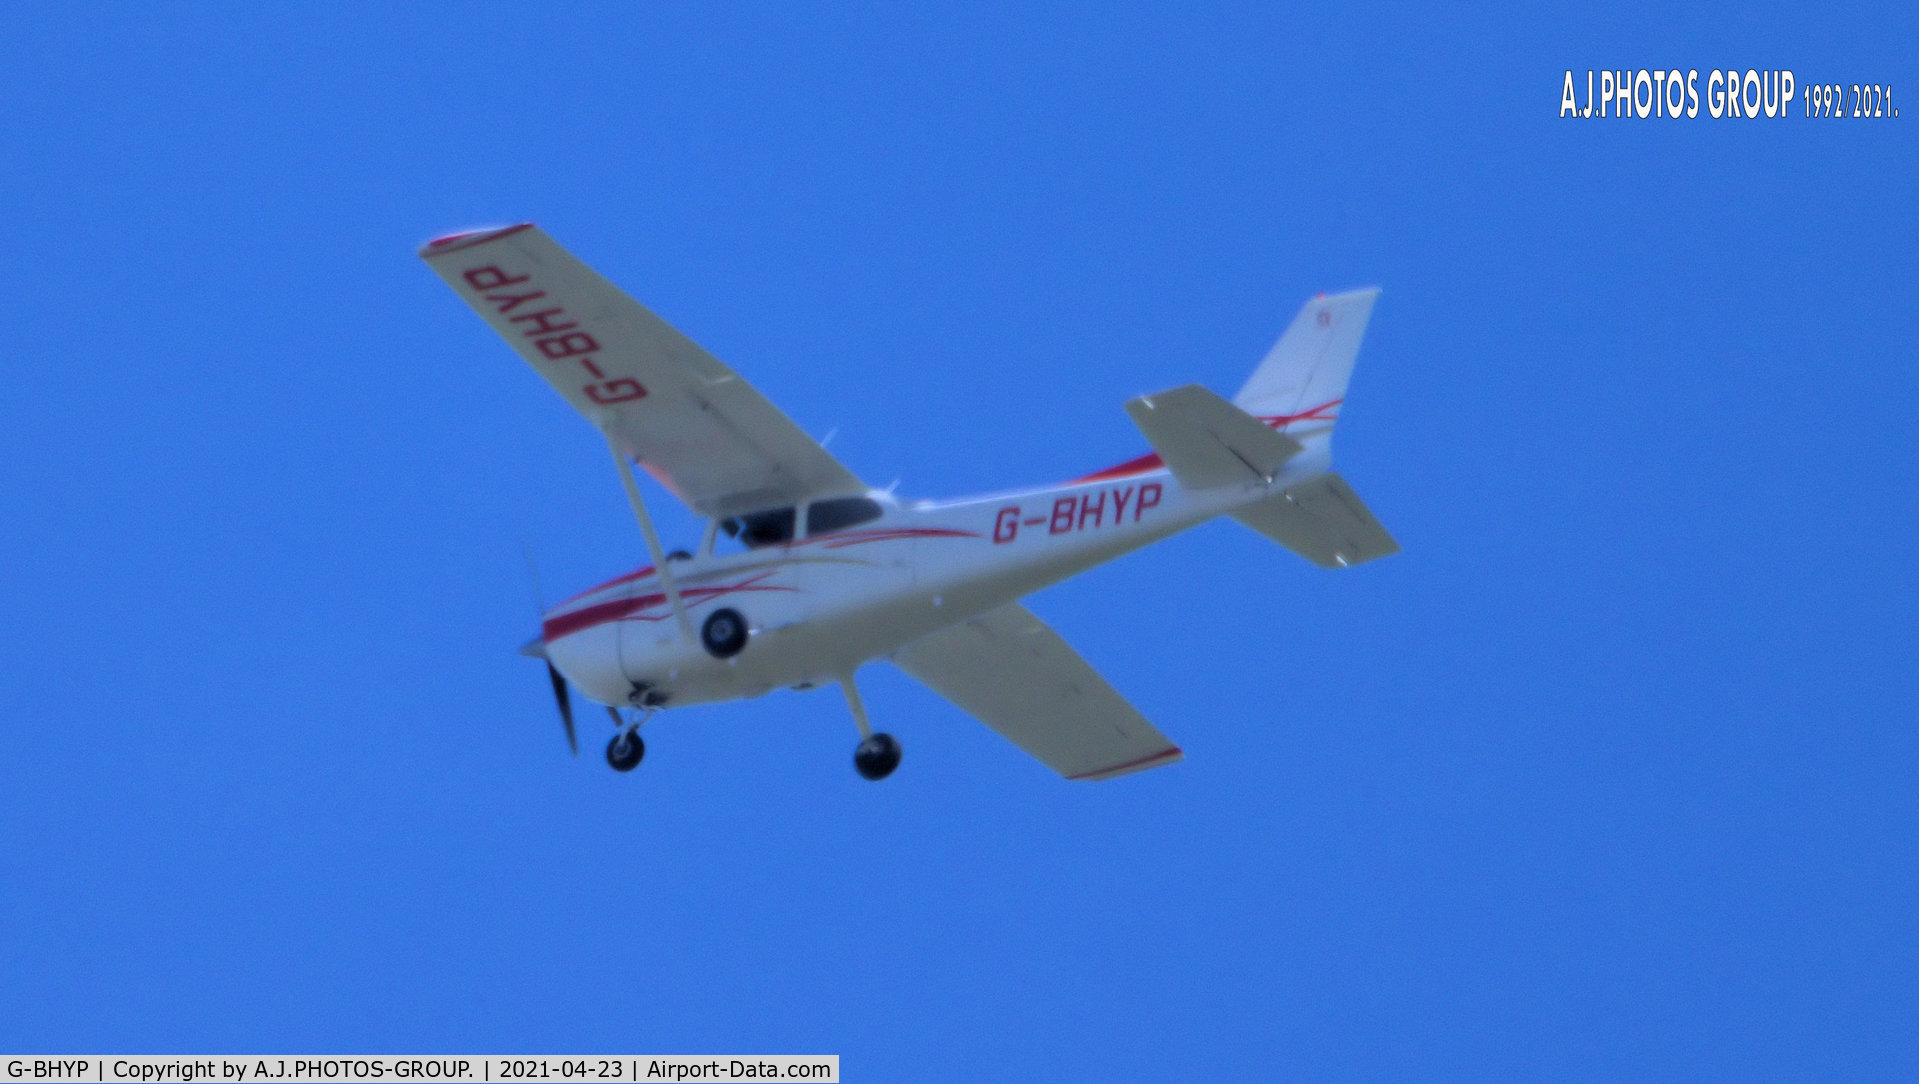 G-BHYP, 1974 Reims F172M Skyhawk Skyhawk C/N 1108, flew near man egcc uk think he was doing photo work